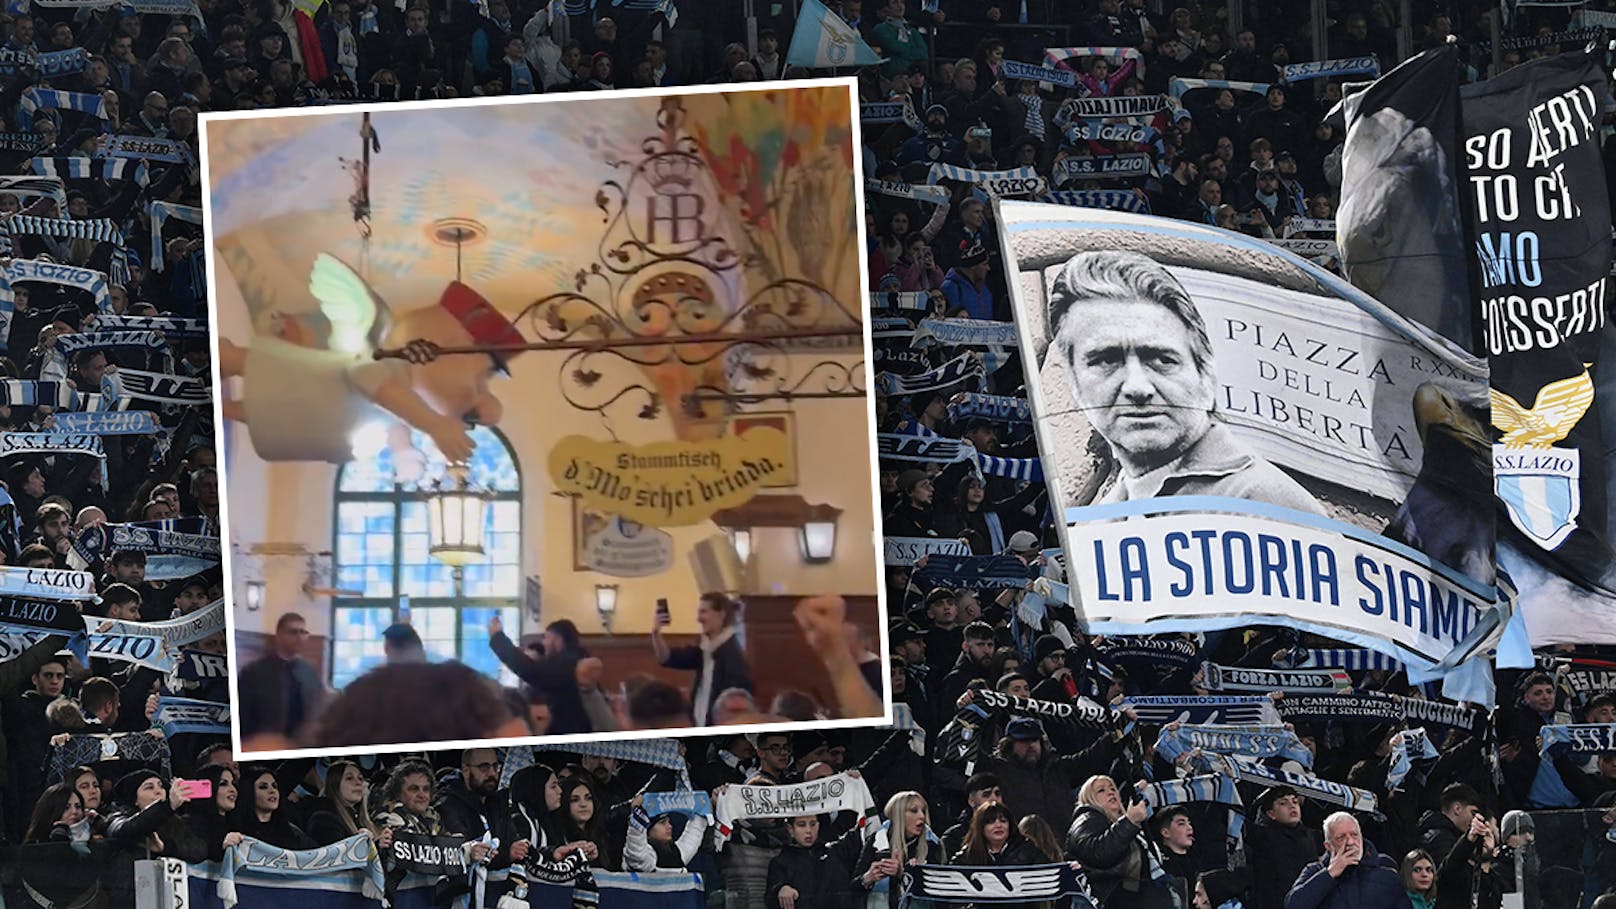 Lazio-Fans mit Faschismus-Eklat im Hofbräuhaus